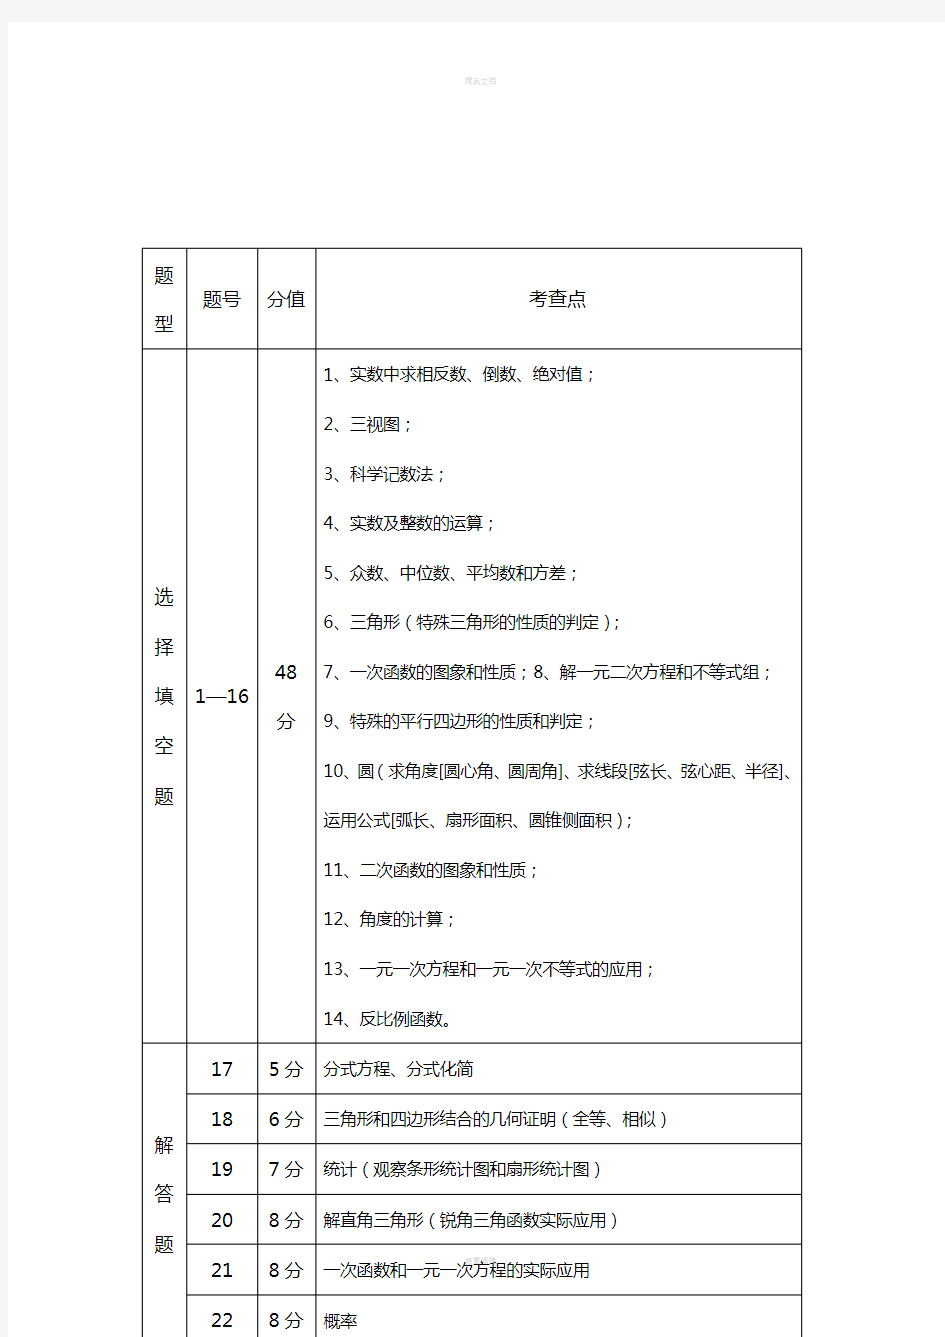 陕西省中考数学试卷结构及考点分析表